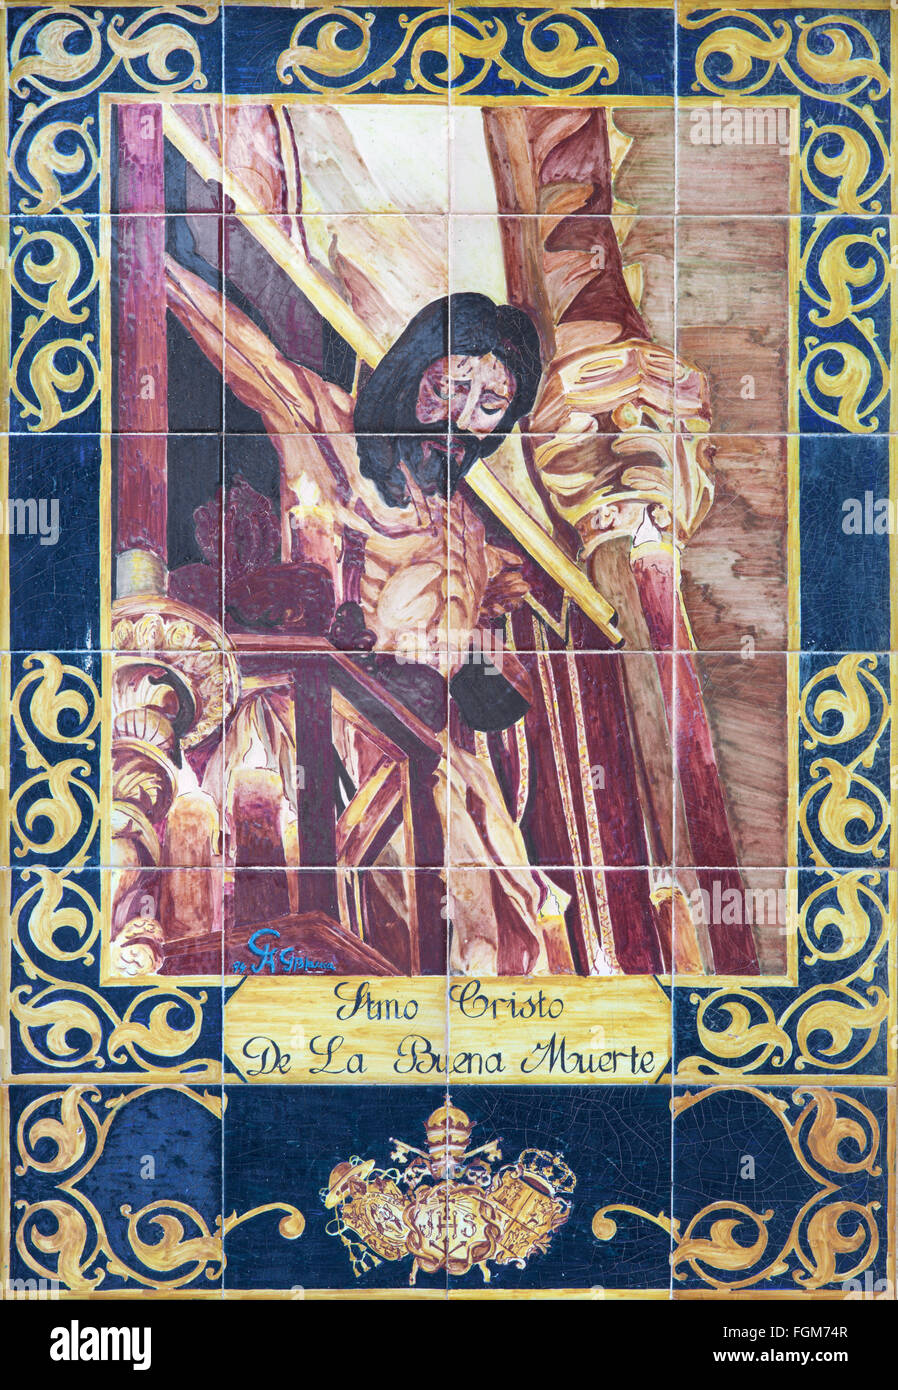 CORDOBA, Spanien - 26. Mai 2015: Die Keramik Jesus am Kreuz, vom Künstler Blanca Augilar Garcia aus dem Jahr 1994. Stockfoto